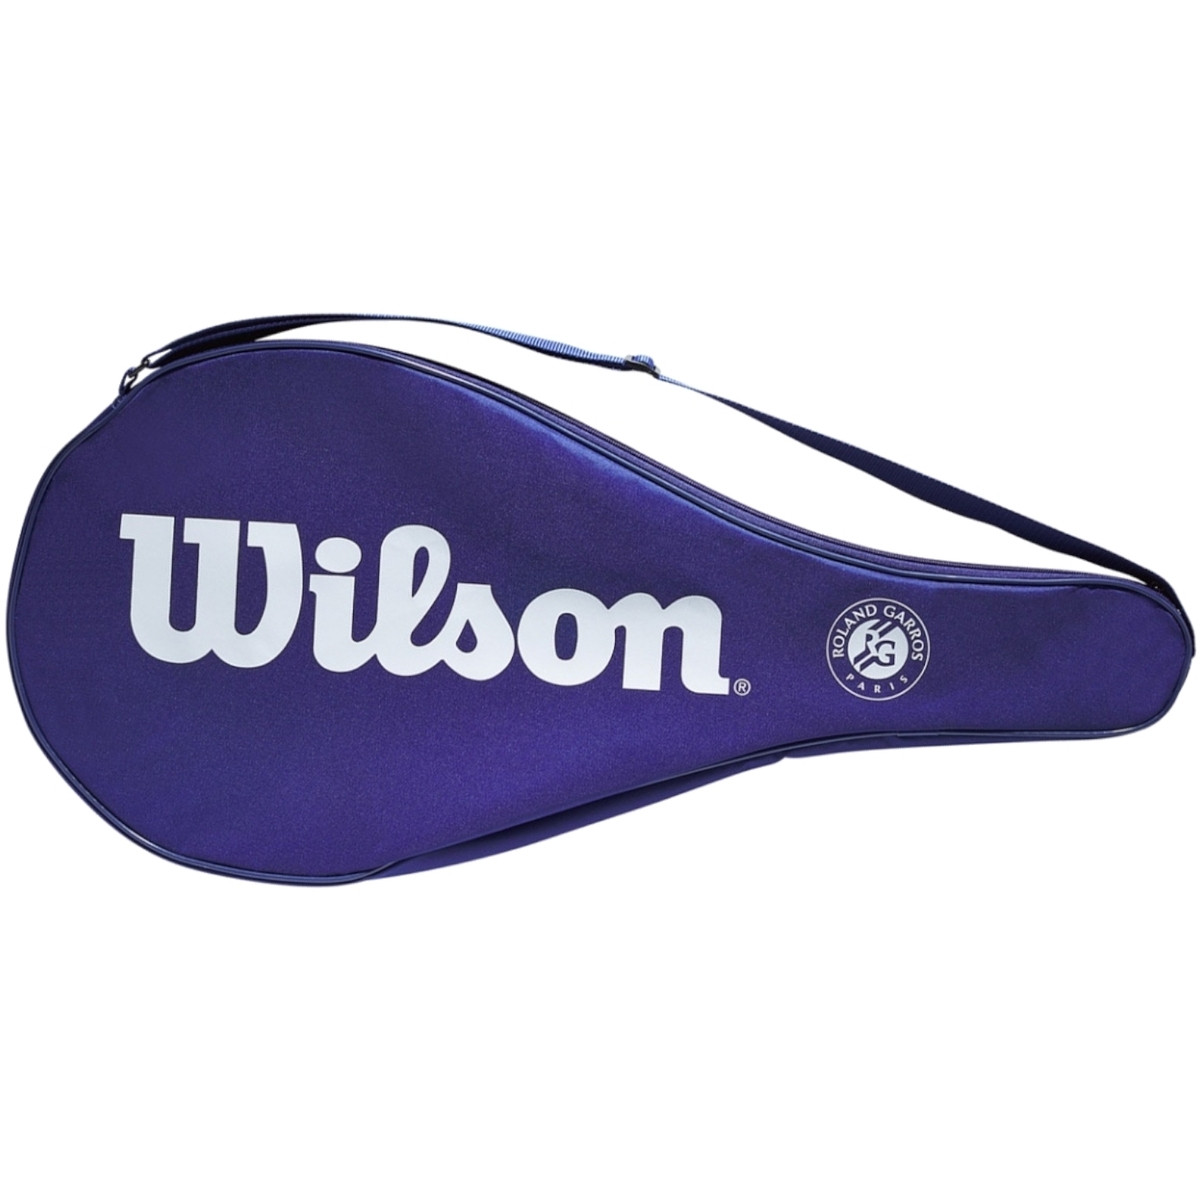 Wilson  Roland Garros Tennis Cover Bag  Modrá